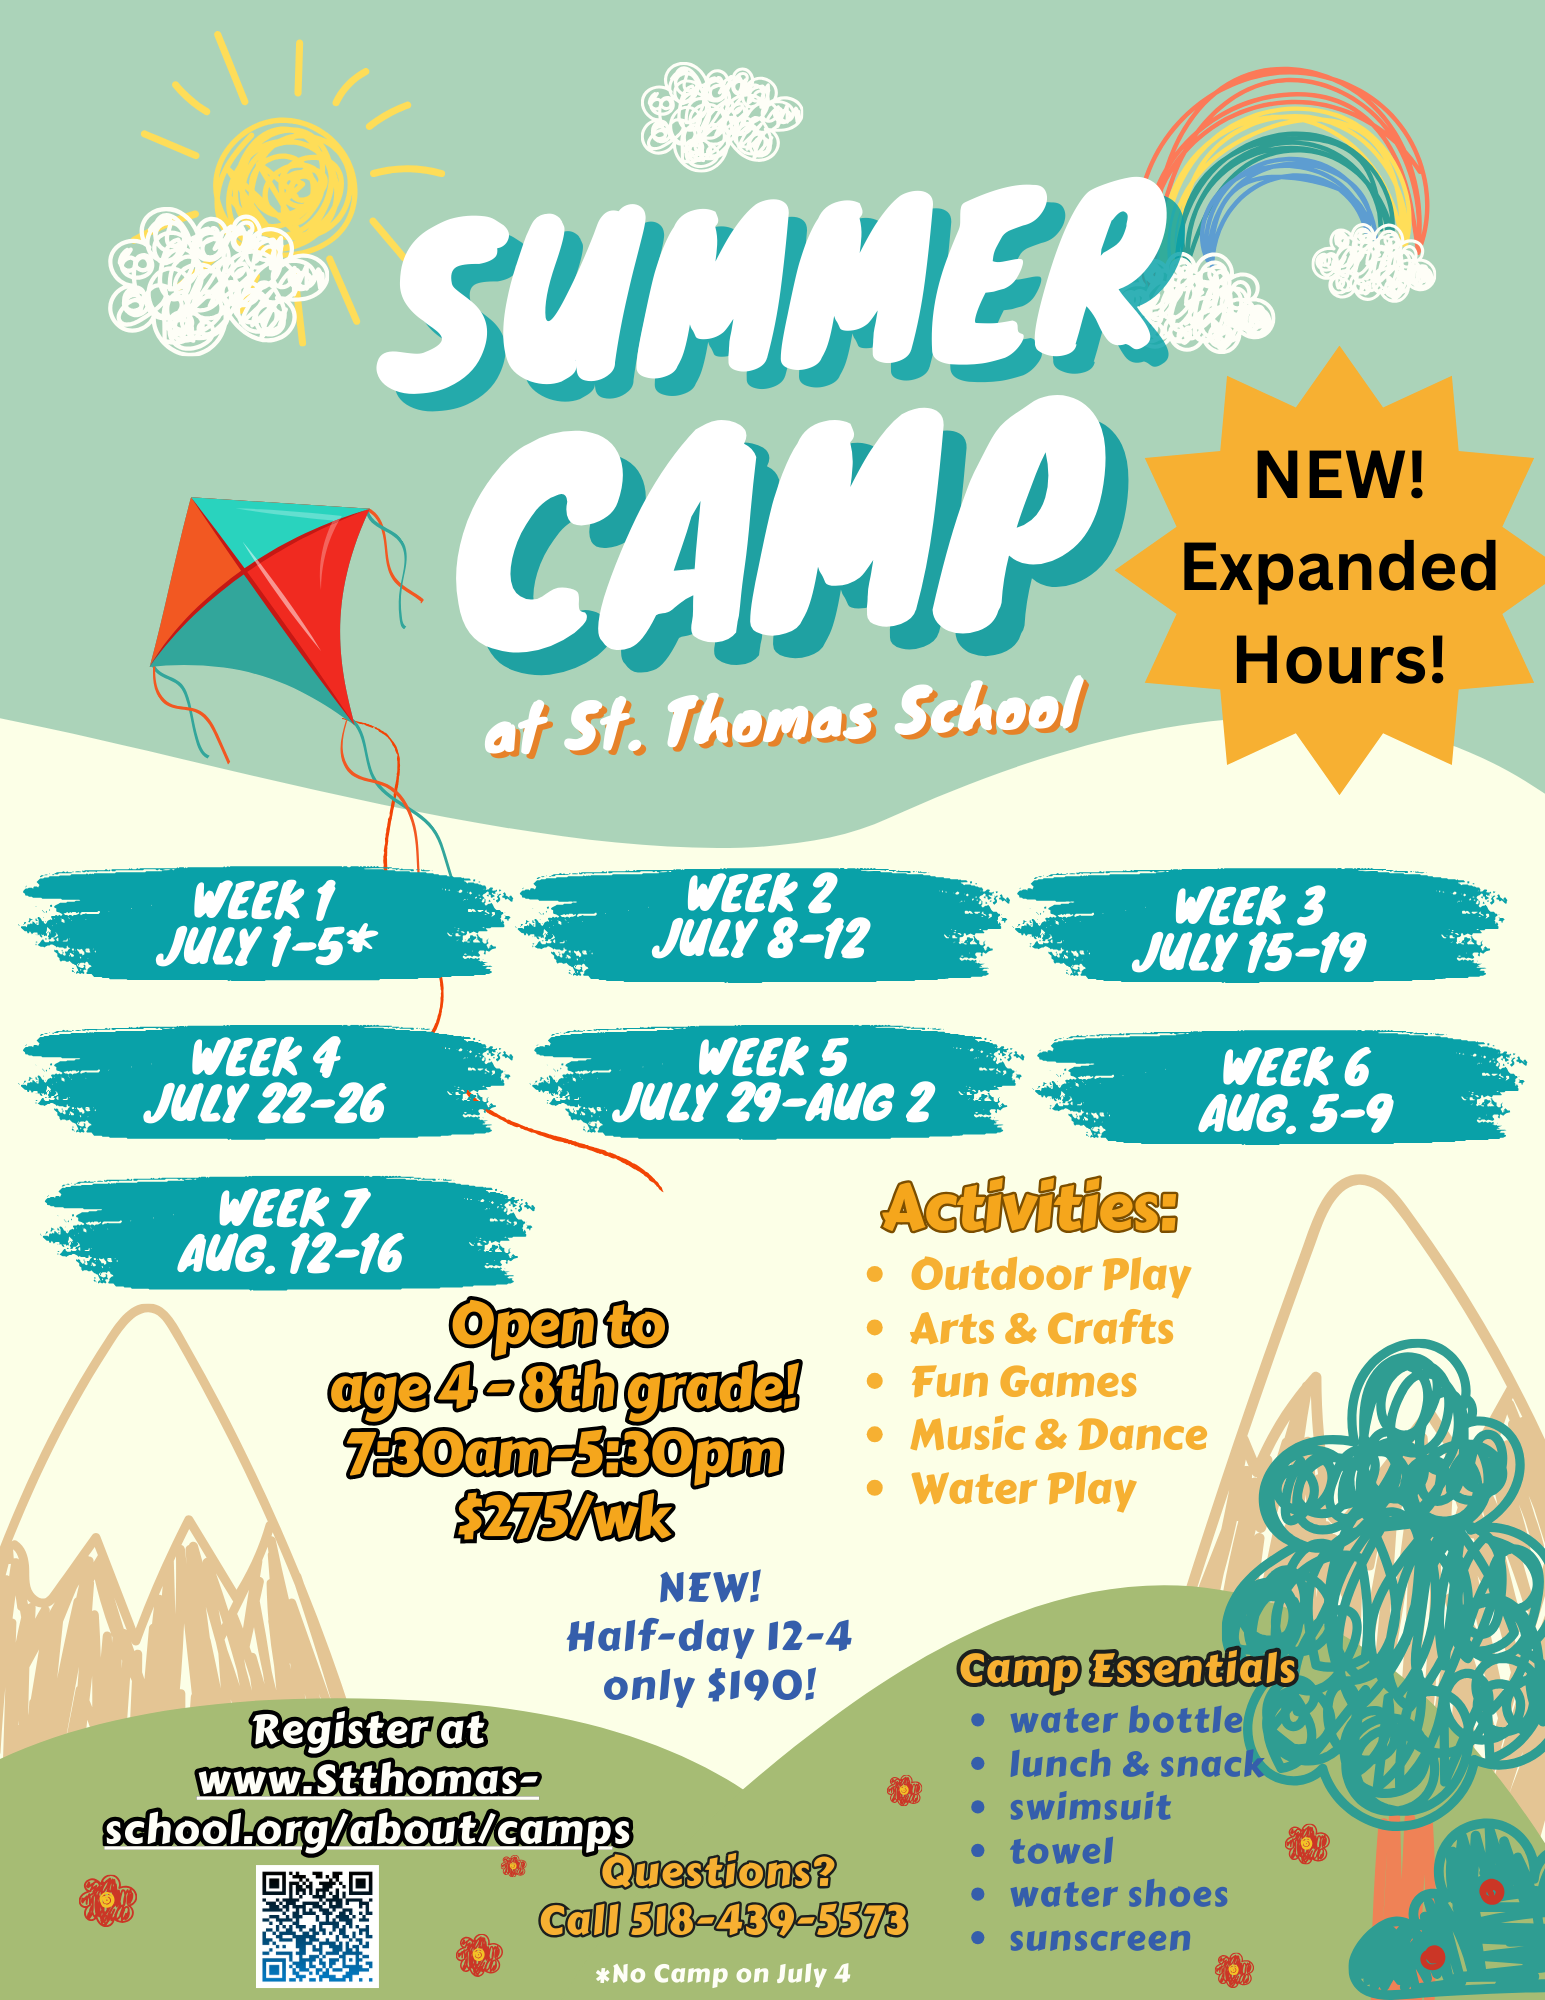 Spring & Summer Camp Registration is Open!